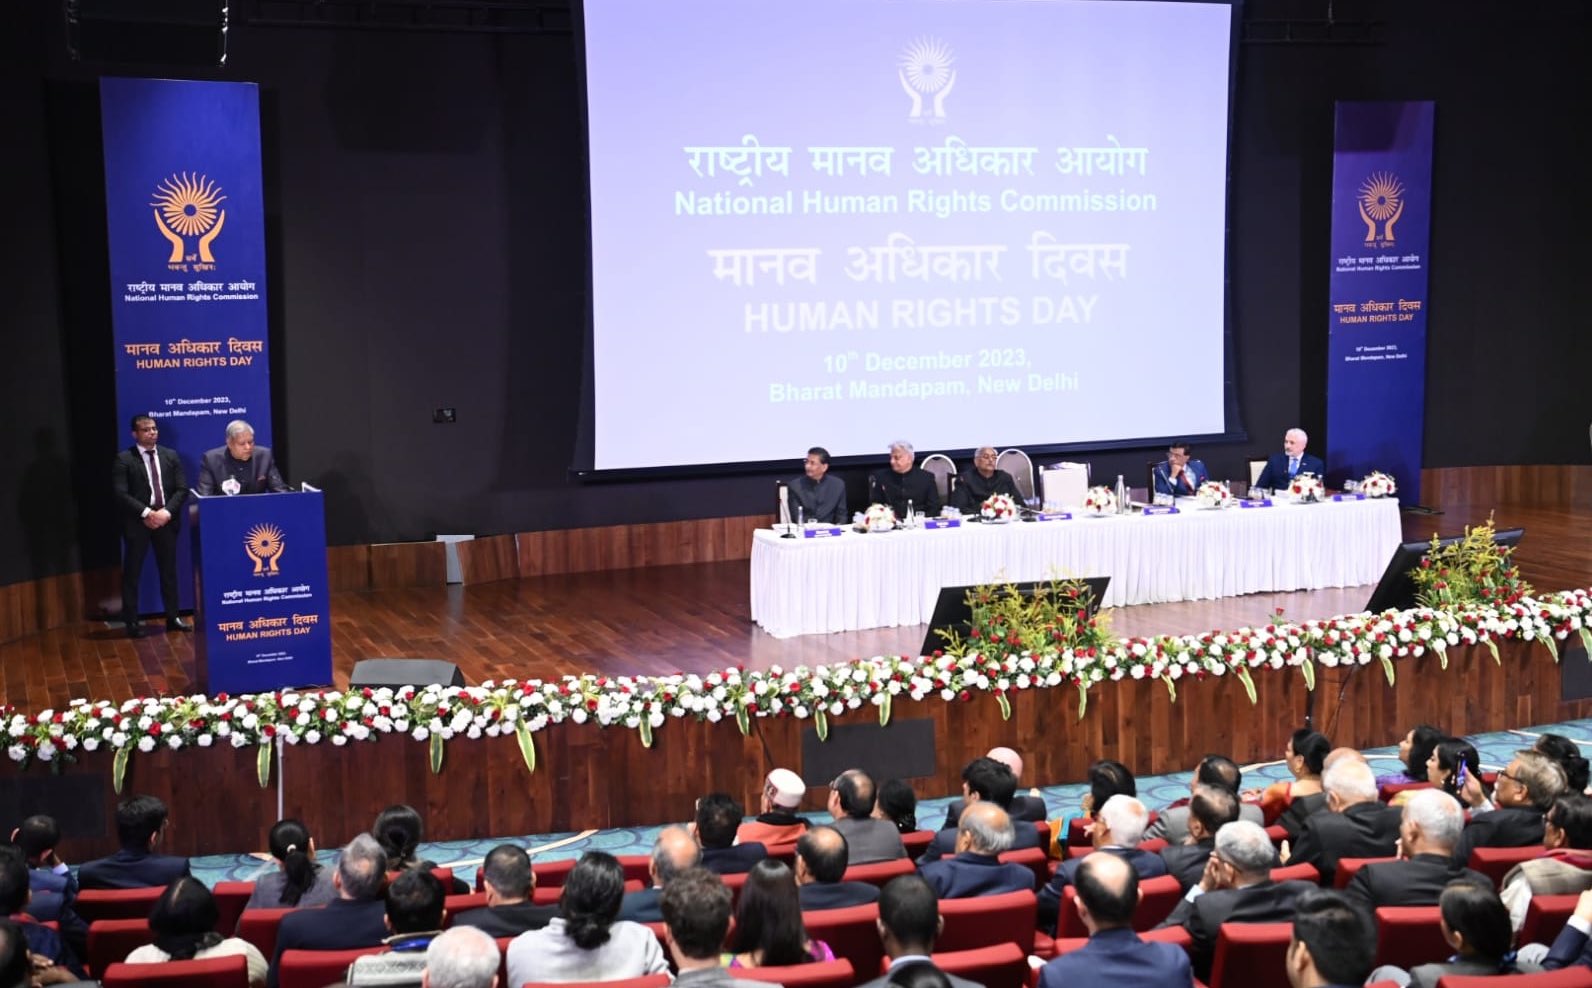 10 दिसंबर 2023 को भारत मंडपम, नई दिल्ली में राष्ट्रीय मानवाधिकार आयोग द्वारा आयोजित मानवाधिकार दिवस समारोह के दौरान सभा को संबोधित करते हुए उपरराष्ट्रपति श्री जगदीप धनखड़। 